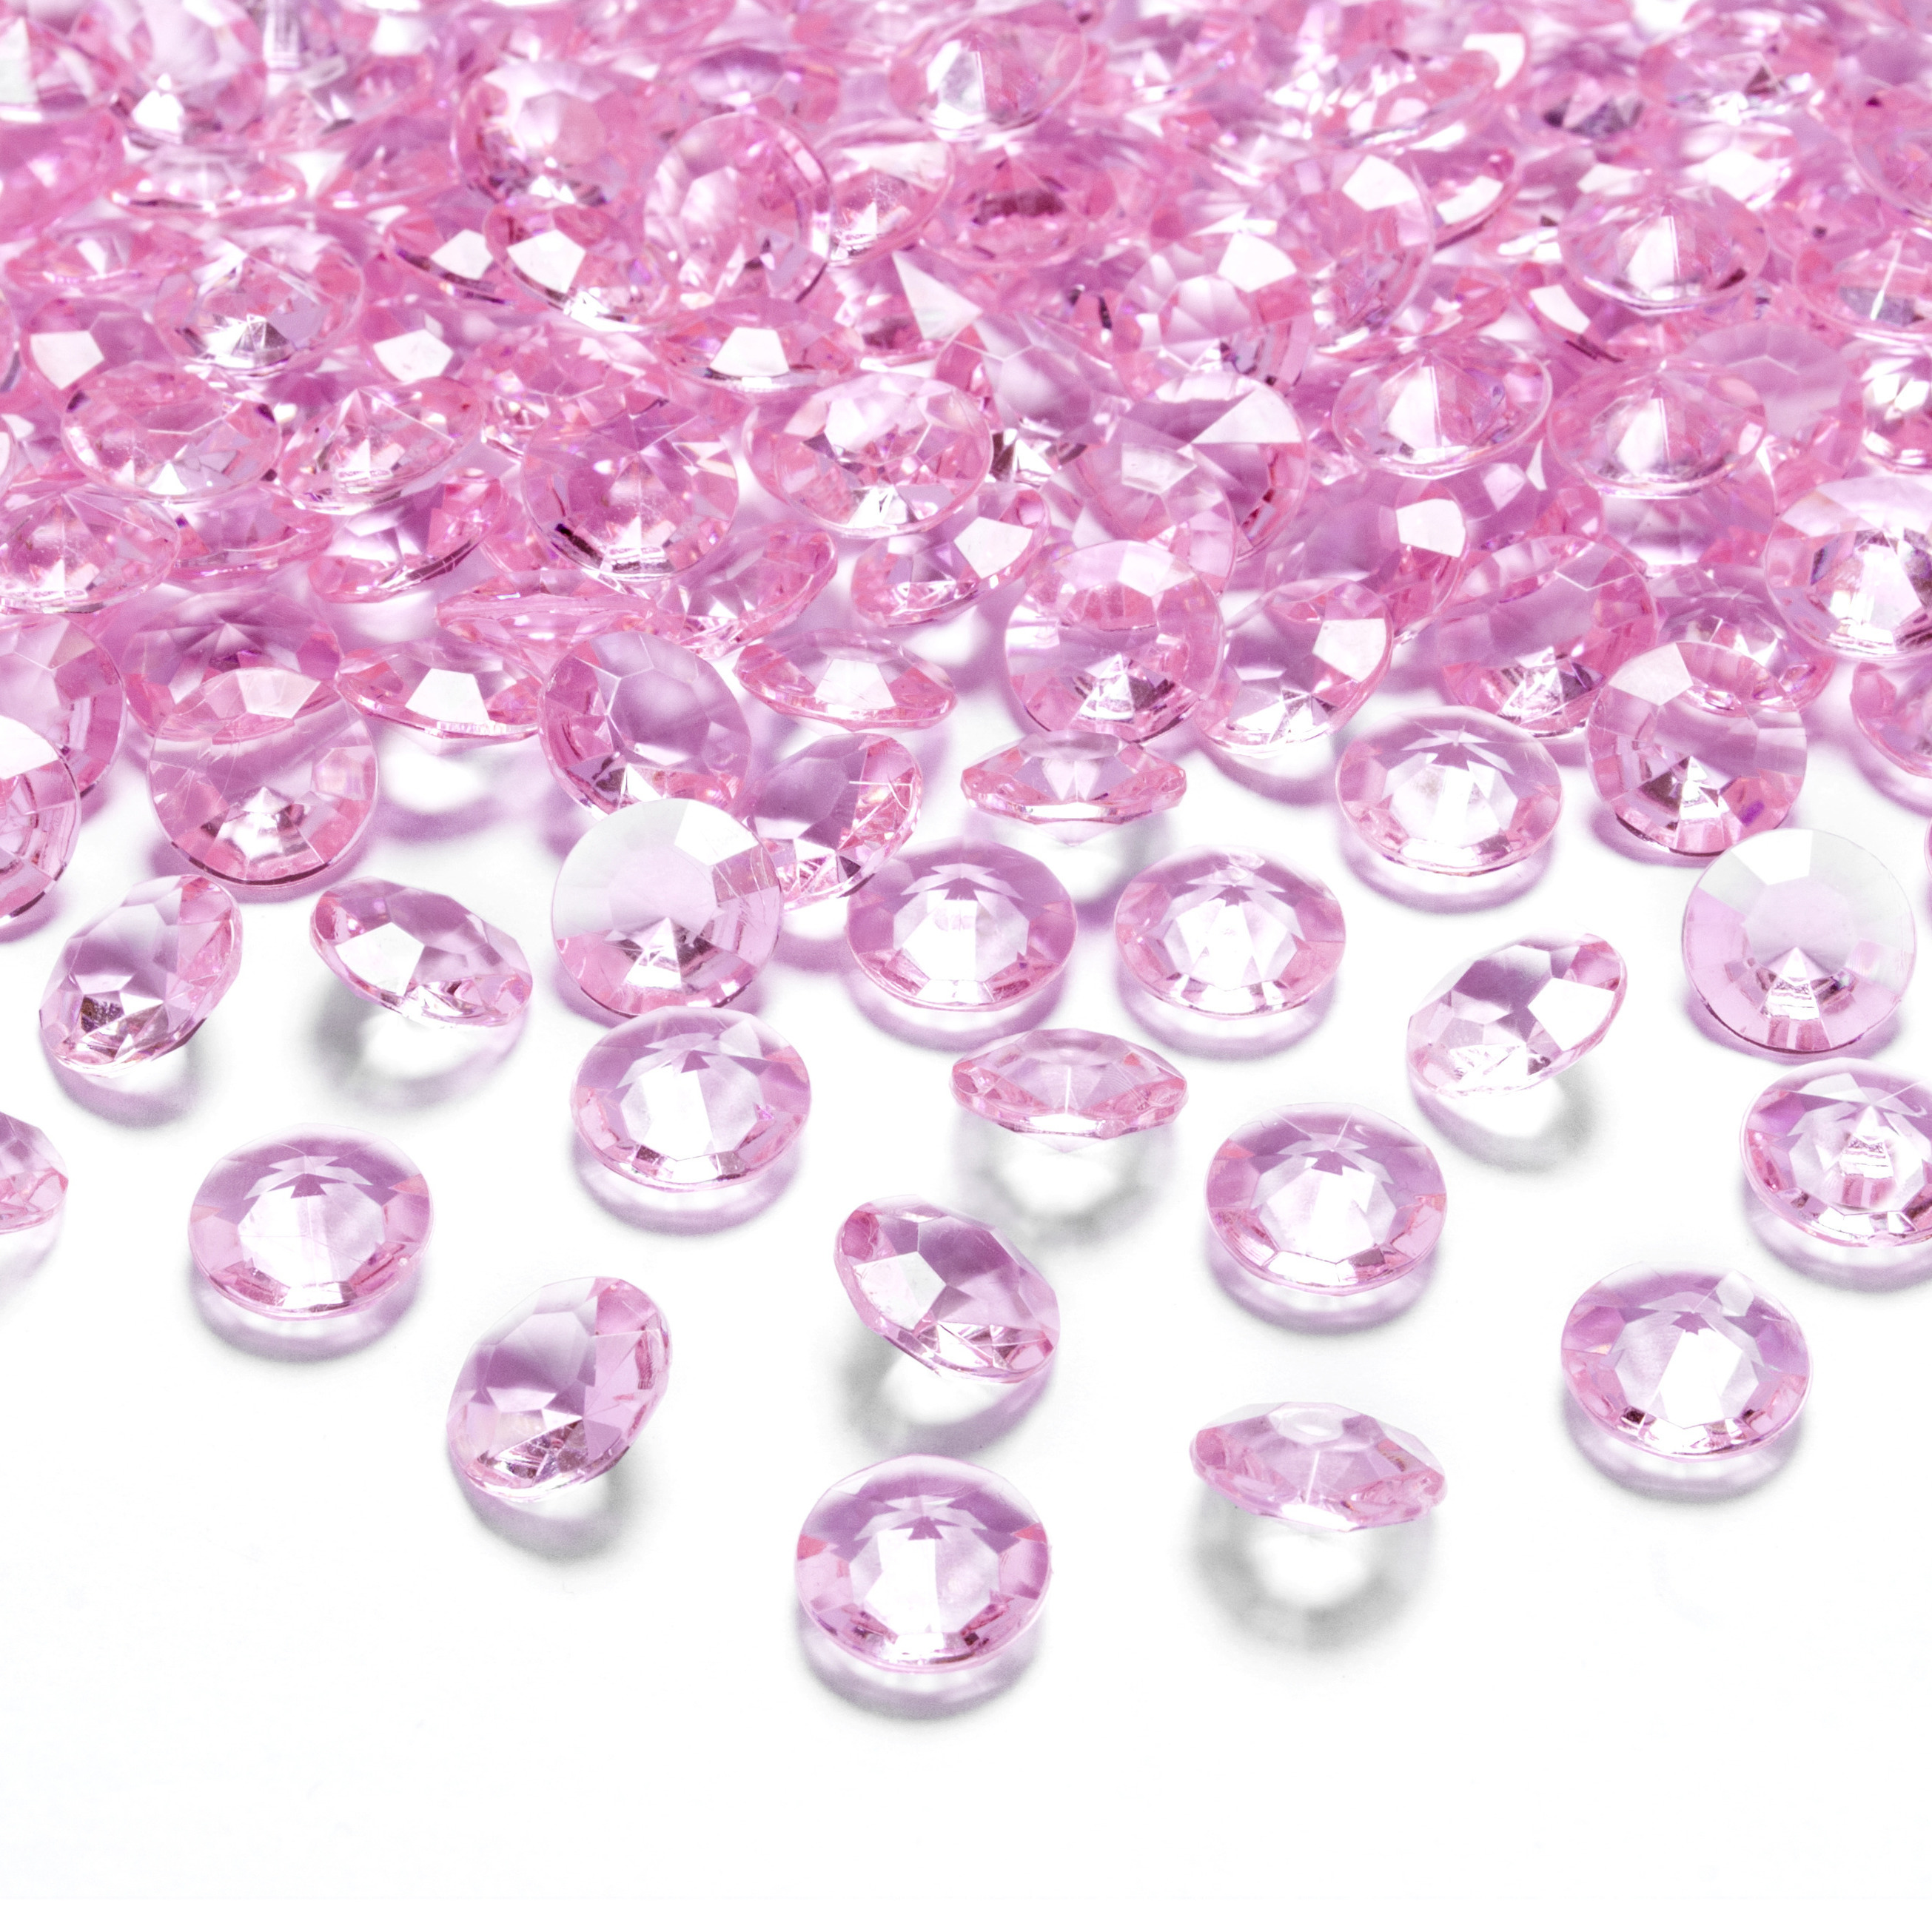 100x Kleine plastic diamanten-stenen licht roze 12 mm-1,2 cm decoratie materiaal